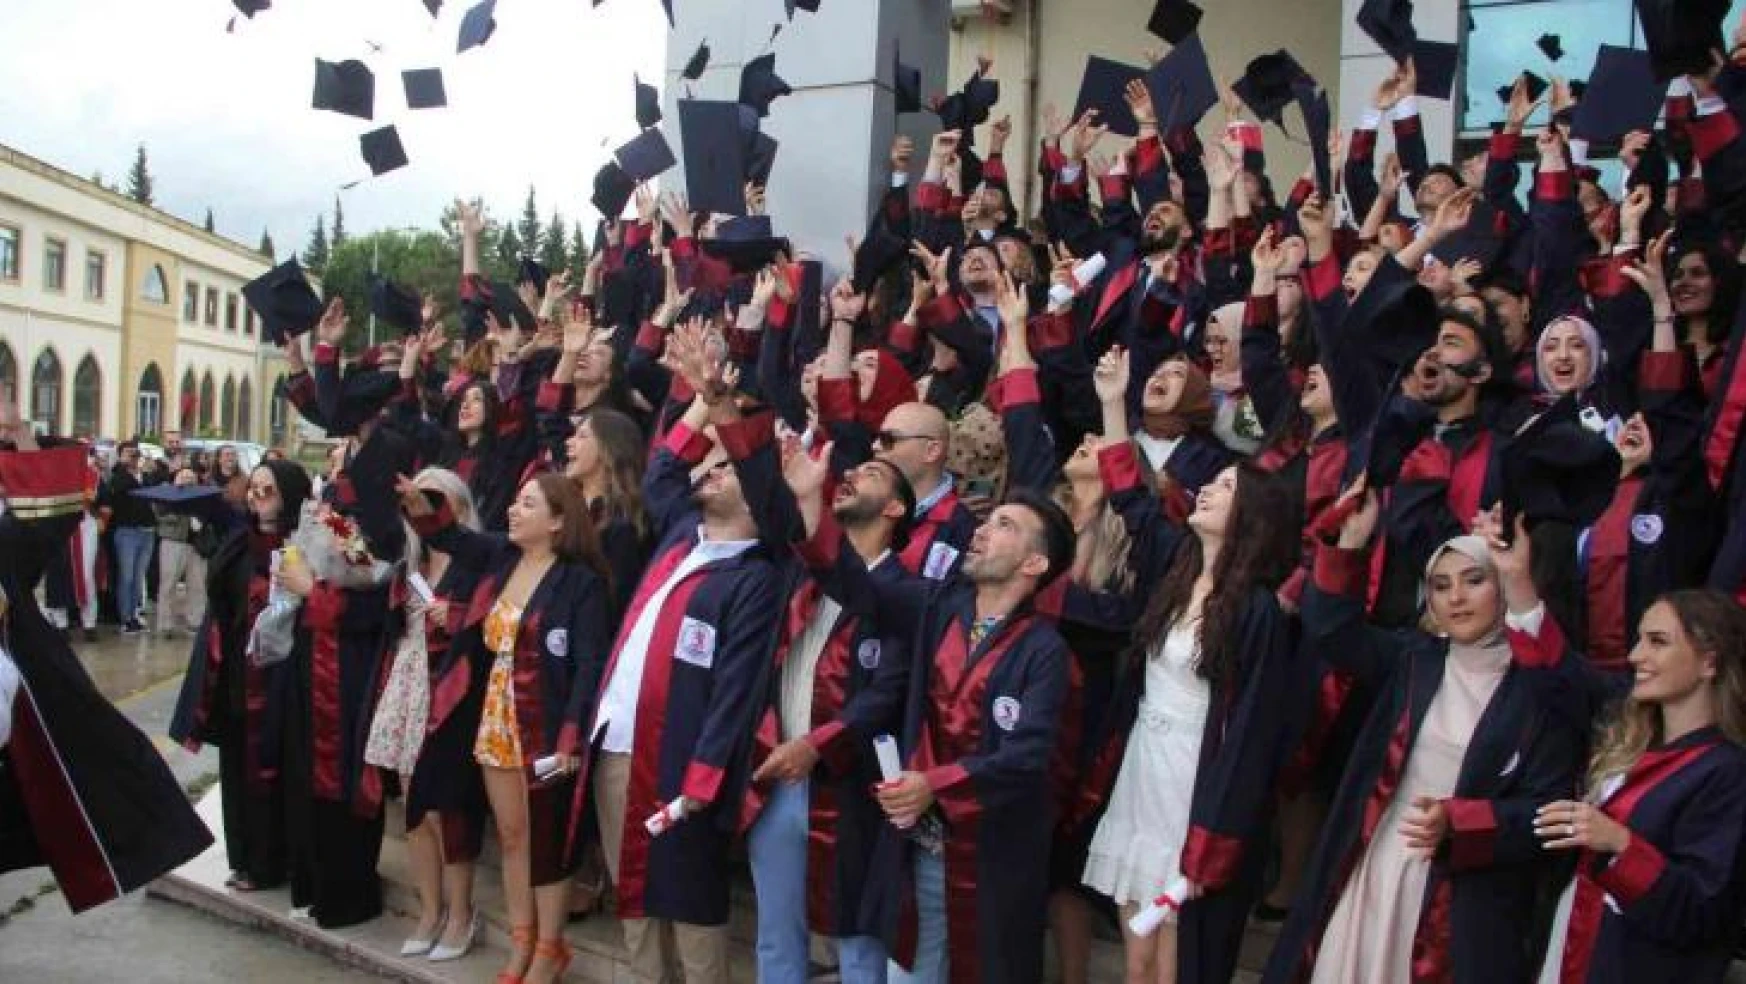 OMÜ İletişim Fakültesi 2021-2022 döneminde 190 mezun verdi